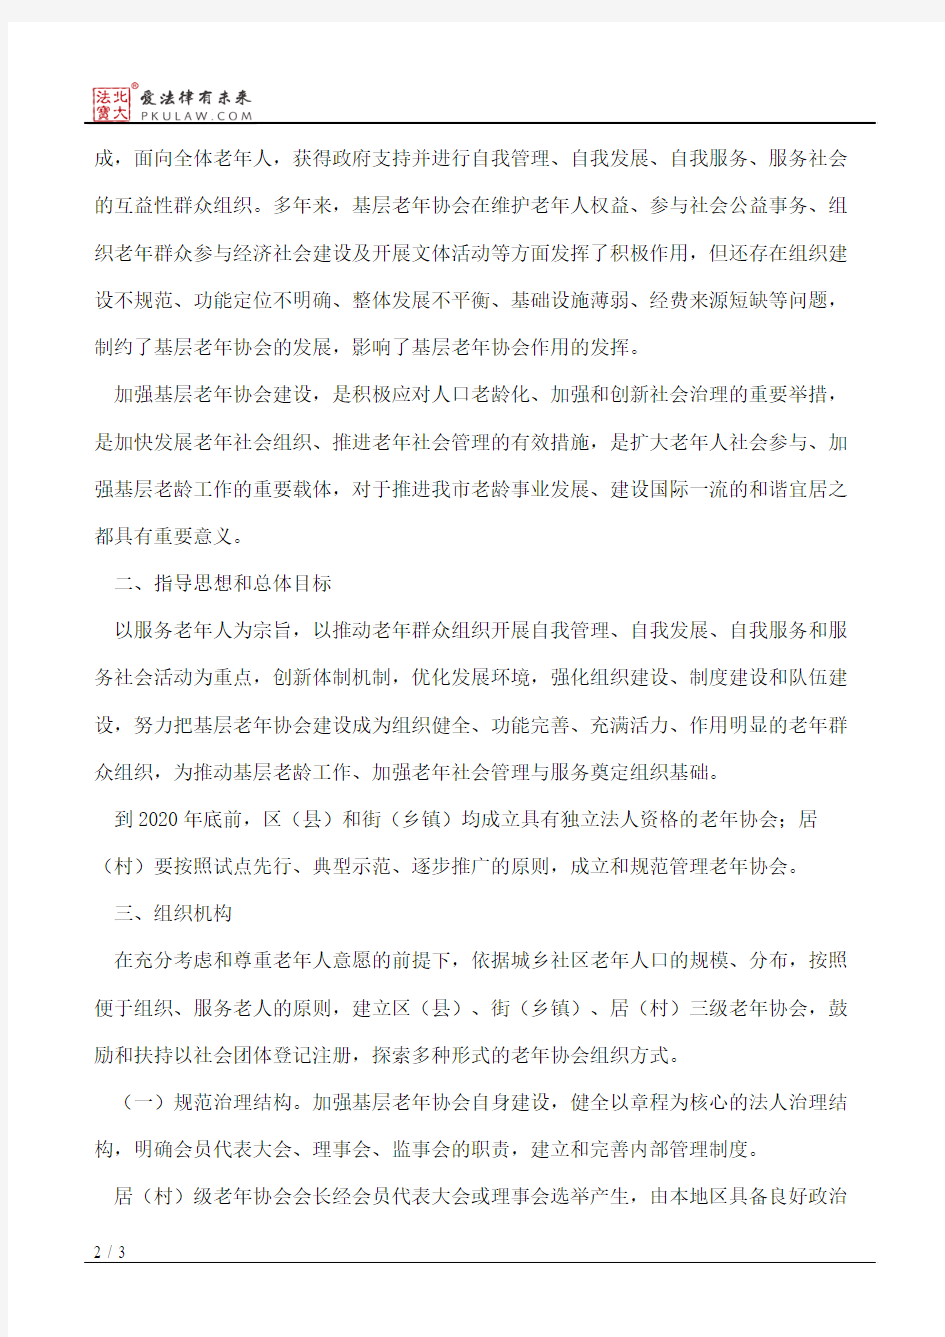 北京市民政局关于加强基层老年协会建设的意见